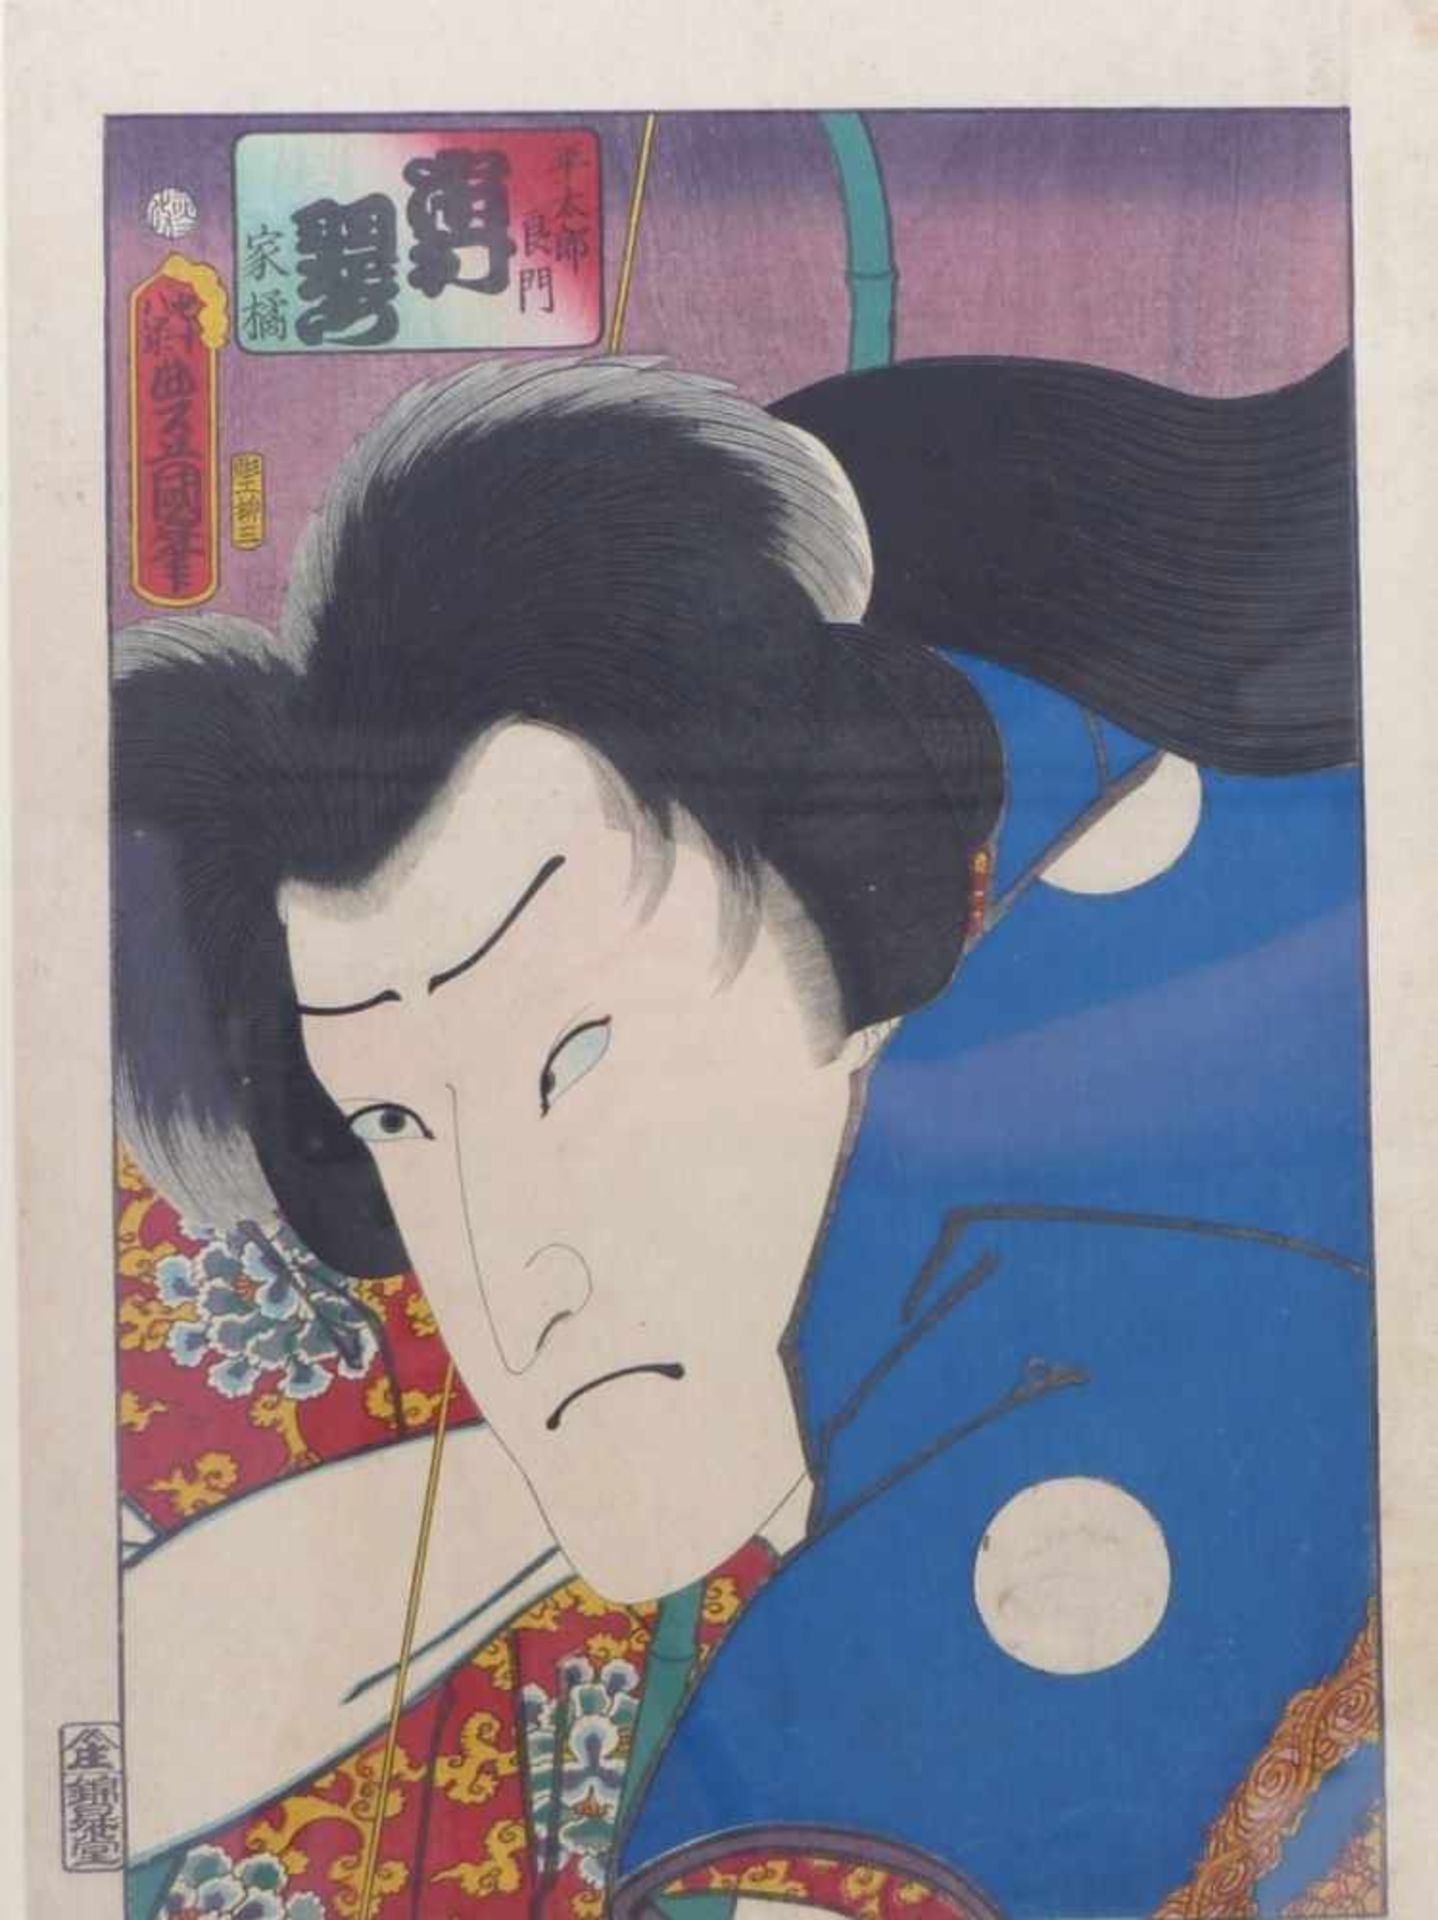 Utagawa Kunisada (Toyokuni III.)Schauspielerportrait aus der Serie "Actor Portraits Past and Present - Image 2 of 3